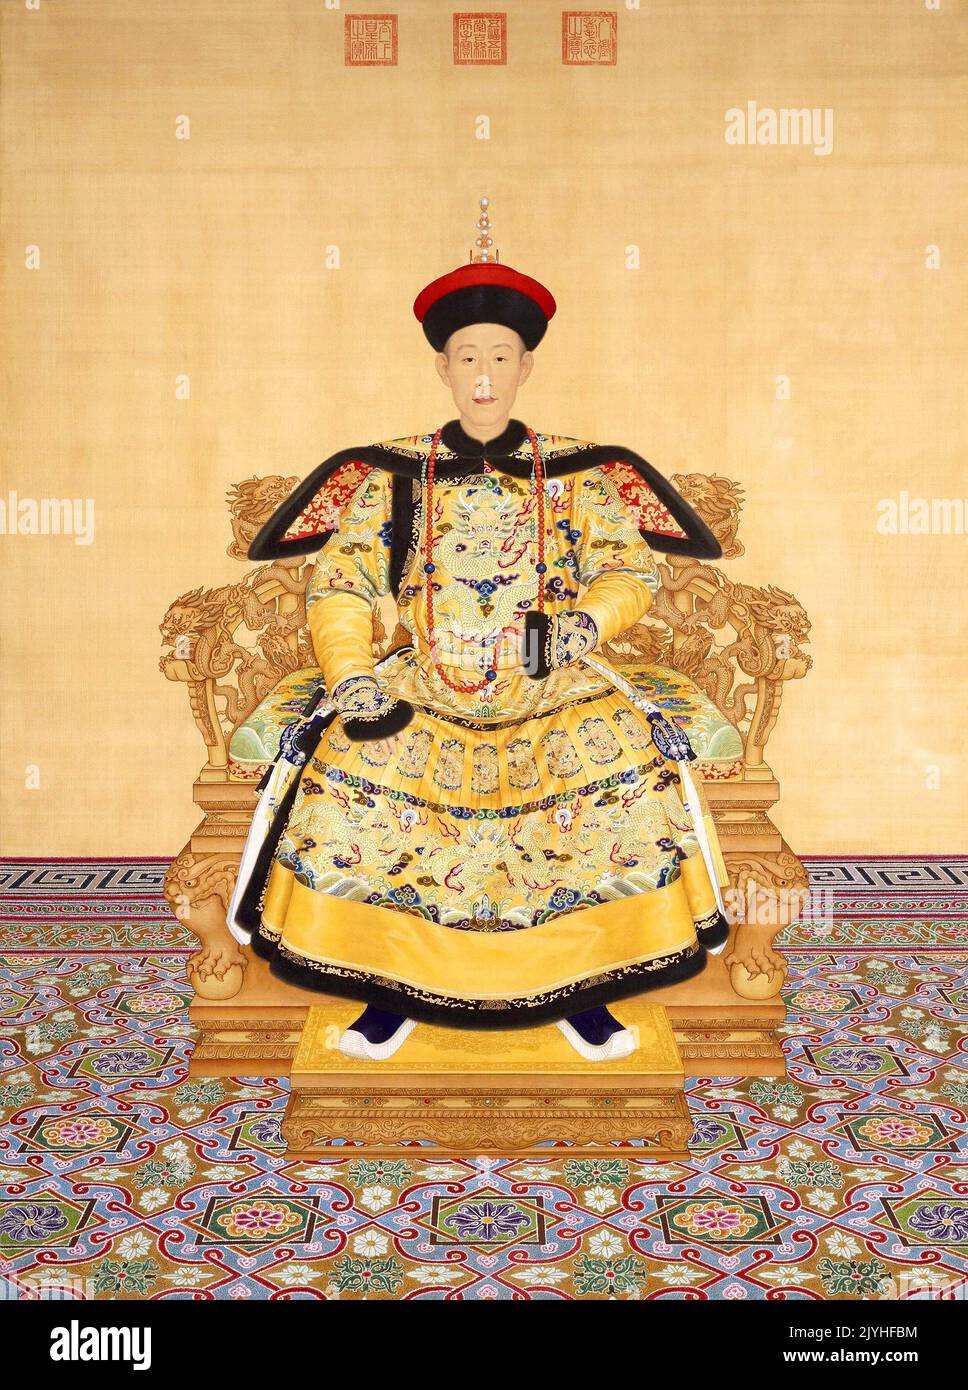 China: Der junge Kaiser Qianlong (25. September 1711 - 7. Februar 1799) im ersten Jahr seiner Herrschaft. Hängende Schriftrolle von Giuseppe Castiglione (19. Juli 1688 - 17. Juli 1766), 1736. Der Qianlong-Kaiser, Geburtsname Hongli, war der fünfte Kaiser der von Mandschu geführten Qing-Dynastie und der vierte Qing-Kaiser, der über China selbst regierte. Der vierte Sohn des Yongzheng-Imperators regierte offiziell von 1736 bis 1795. Am 8. Februar (dem ersten Tag des Mondjahres) gab er zugunsten seines Sohnes, des Jiaqing-Imperators, ab. Stockfoto